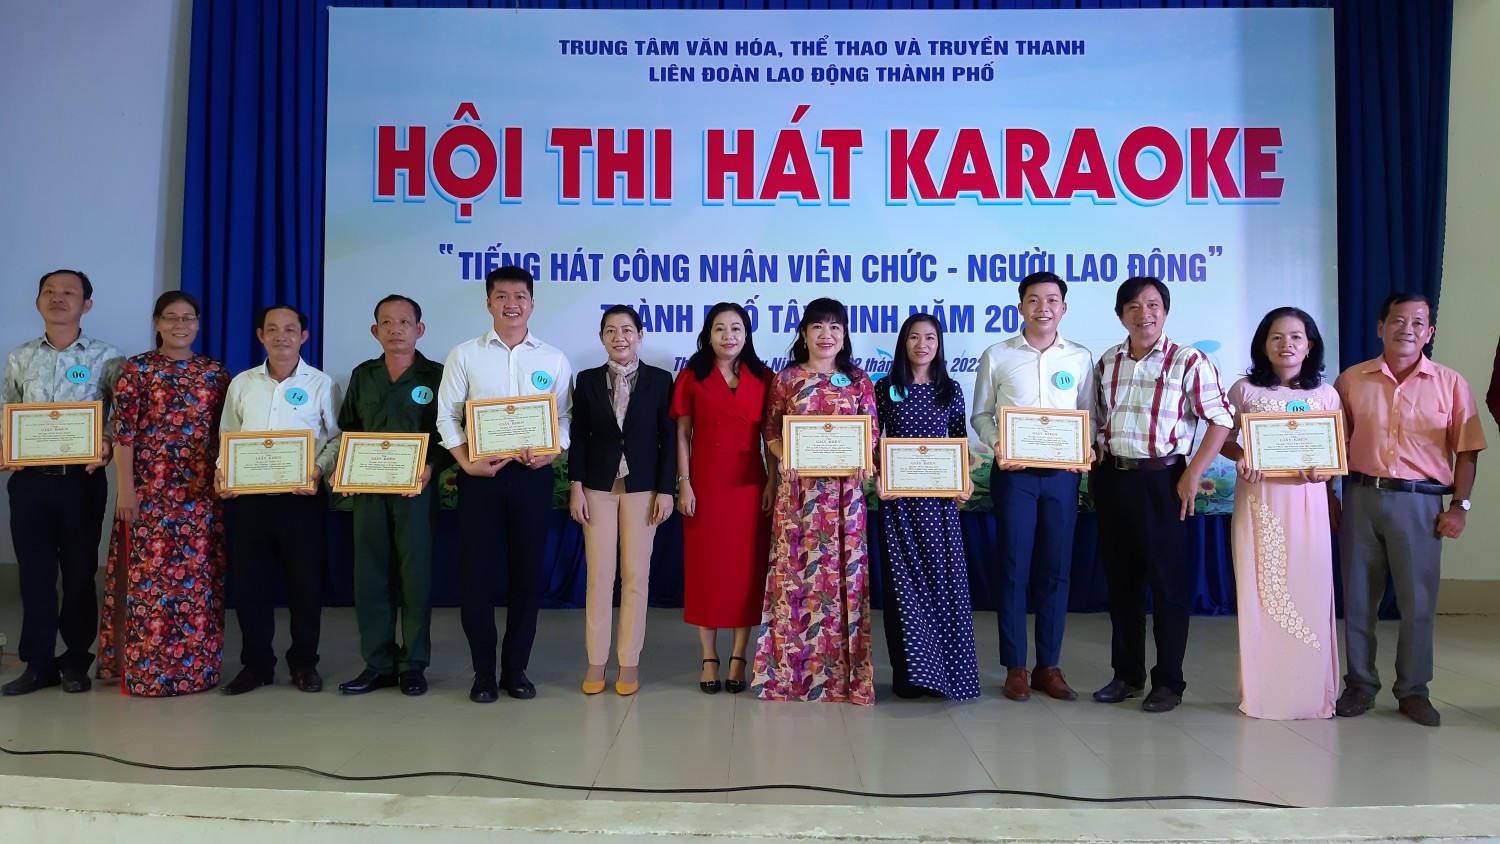 Thành phố Tây Ninh: Sôi nổi hội thi Karaoke “Tiếng hát công nhân, viên chức, người lao động”